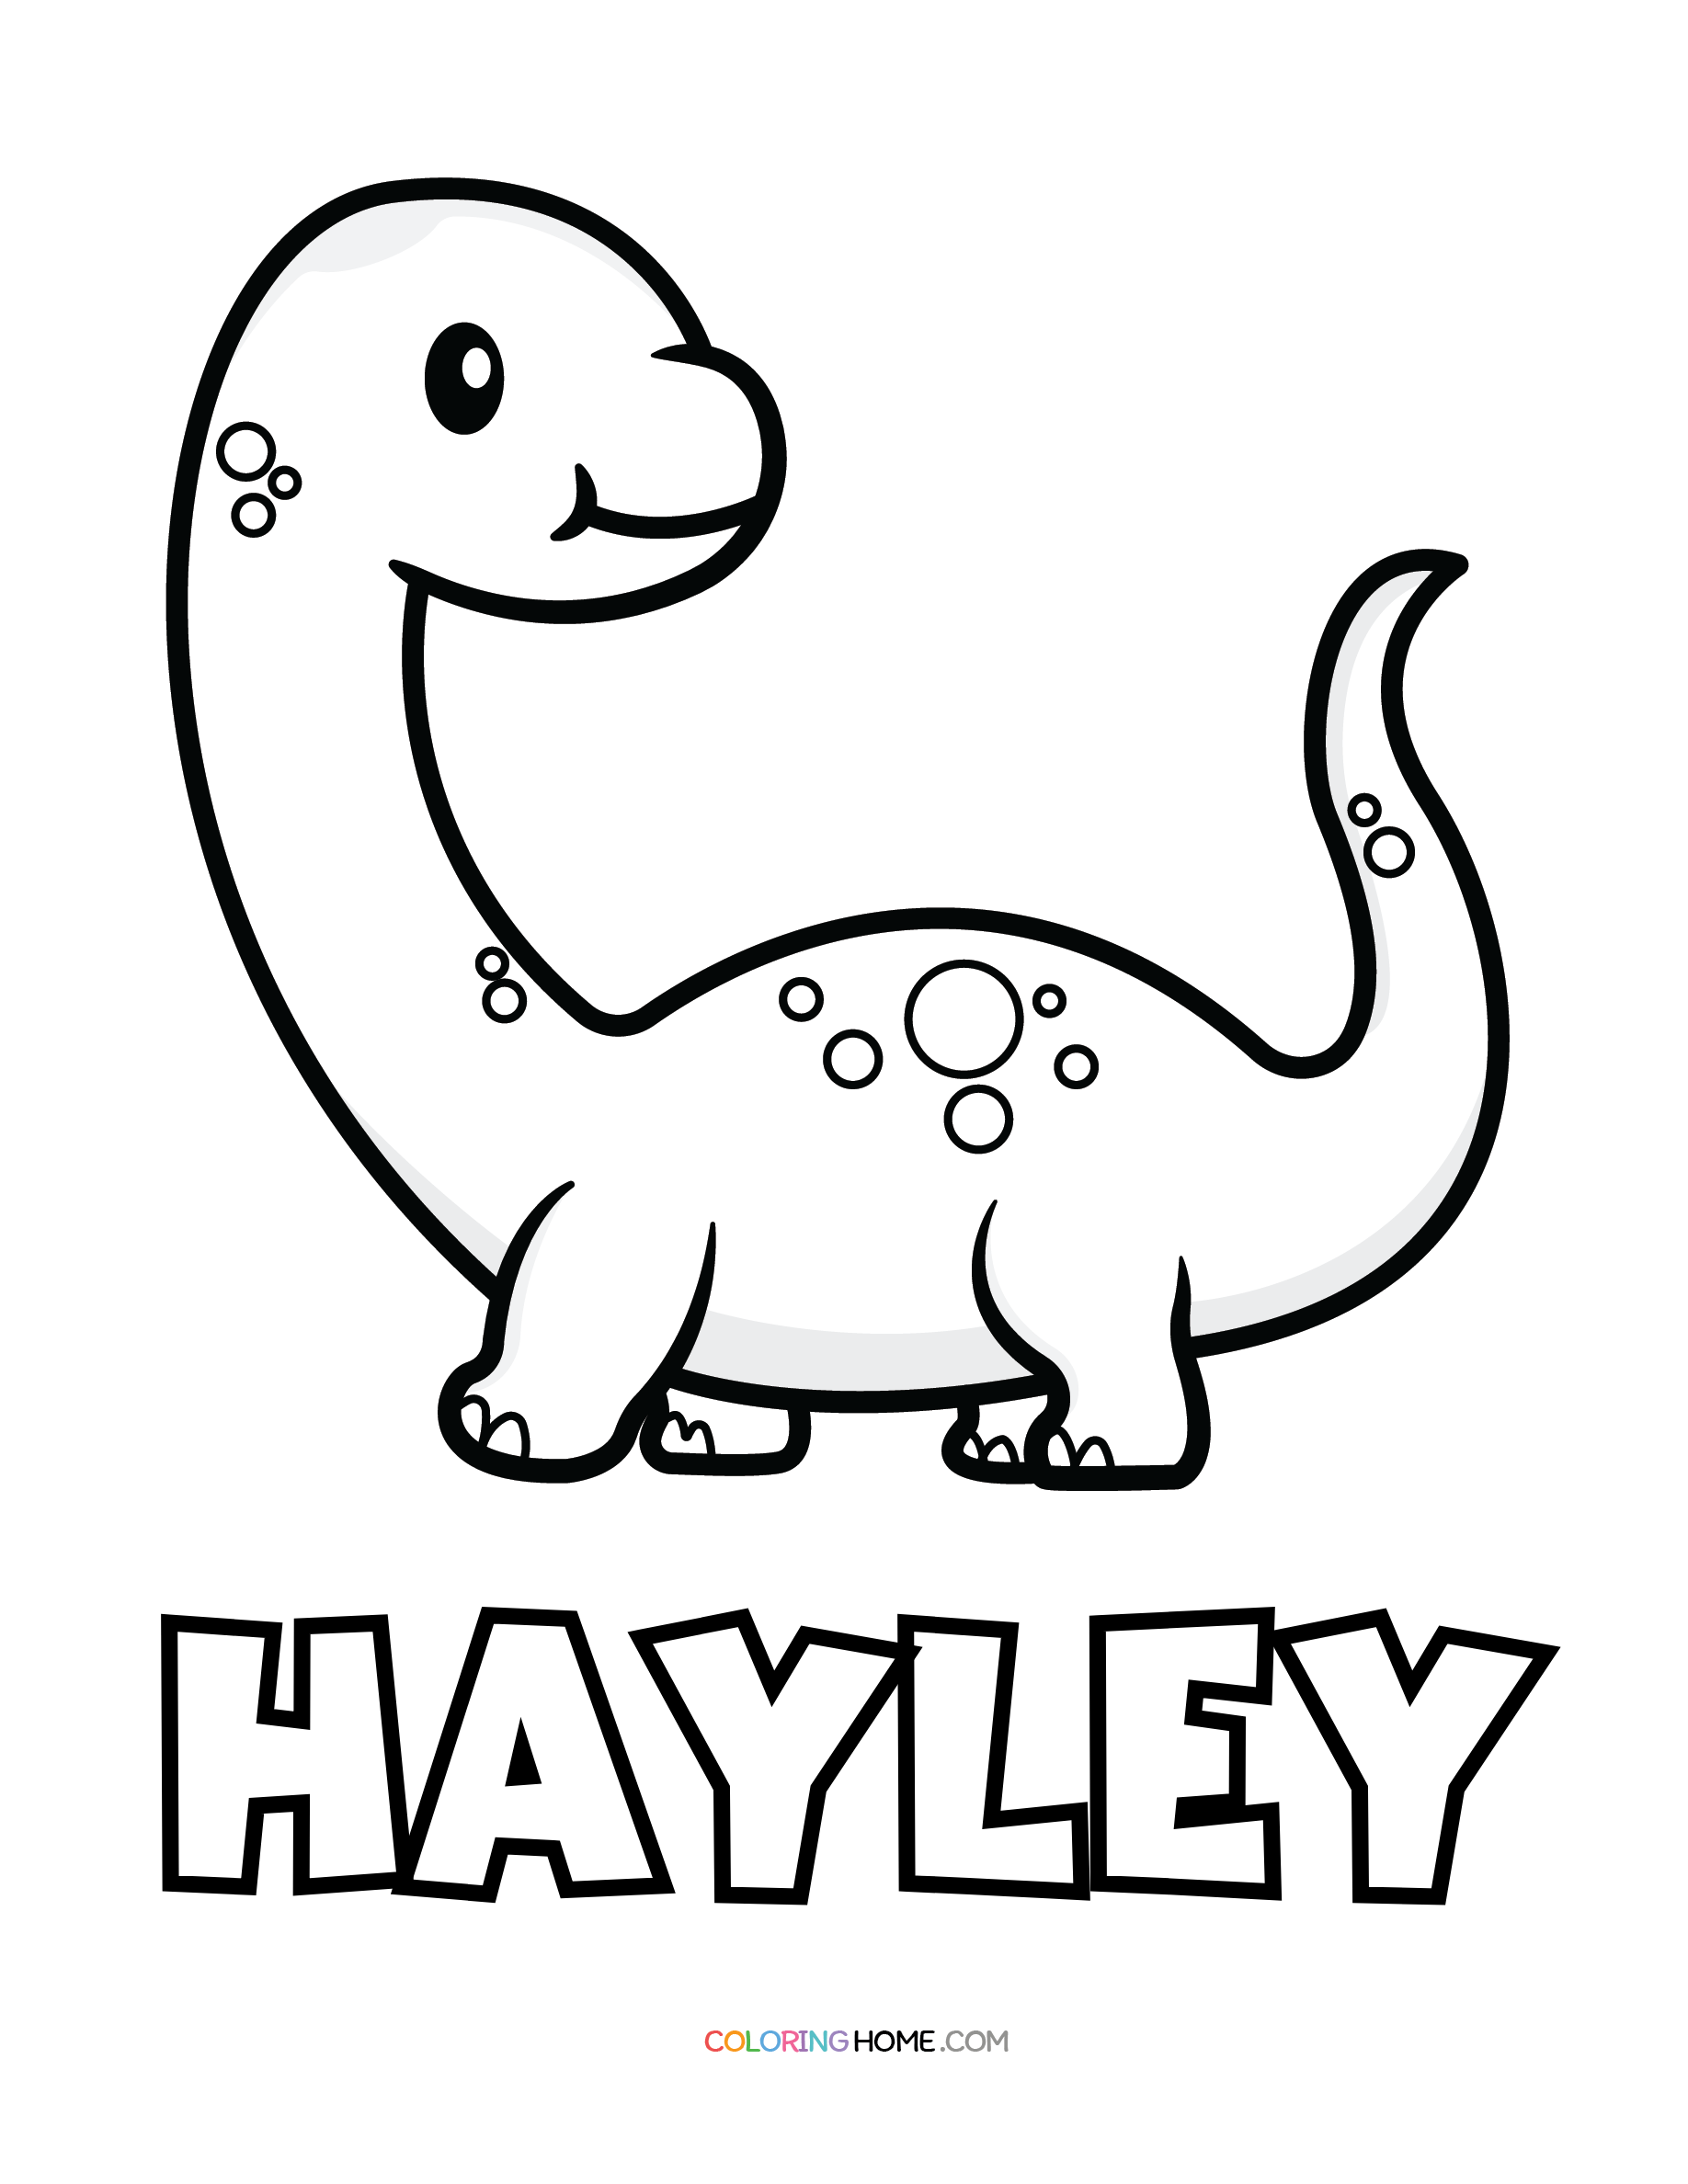 Hayley dinosaur coloring page